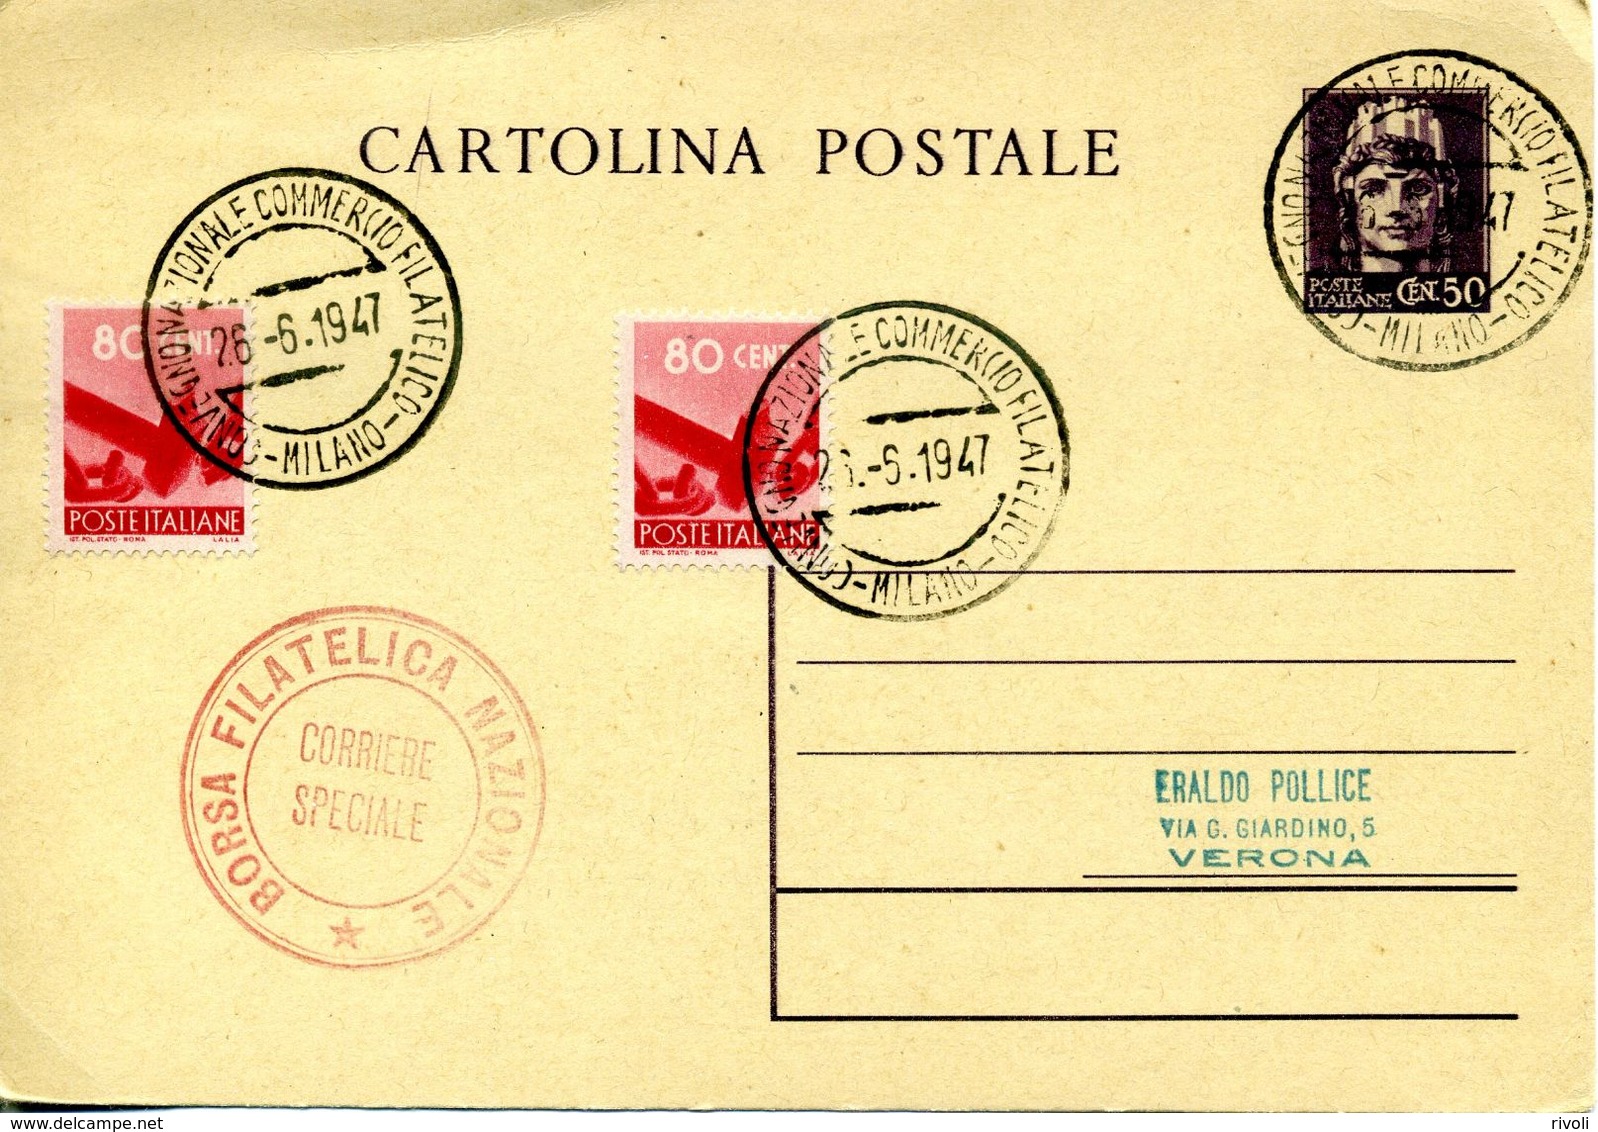 ITALIE-ITALIA CARTOLINA POSTALE TURRITA 0.50 CENT/LIRE DEL 1945 VIAGGIATA IL 26.06.1947 - Stamped Stationery